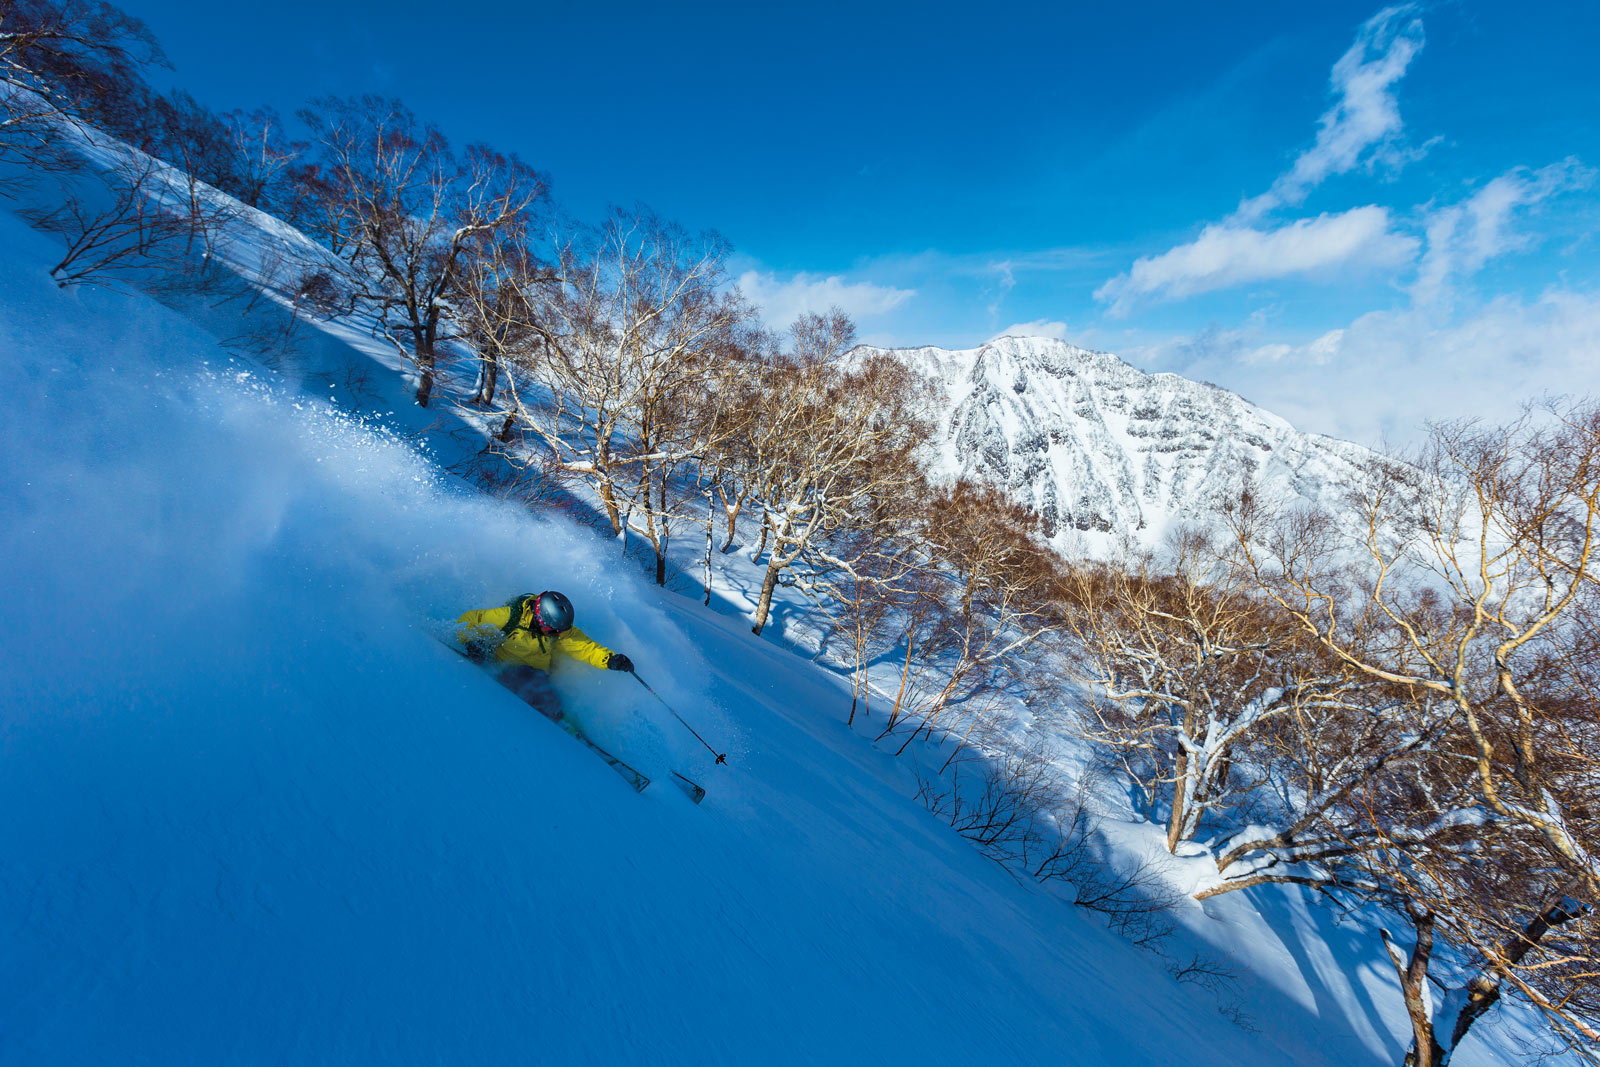 Skiing powder at the Akakura-Kanko ski